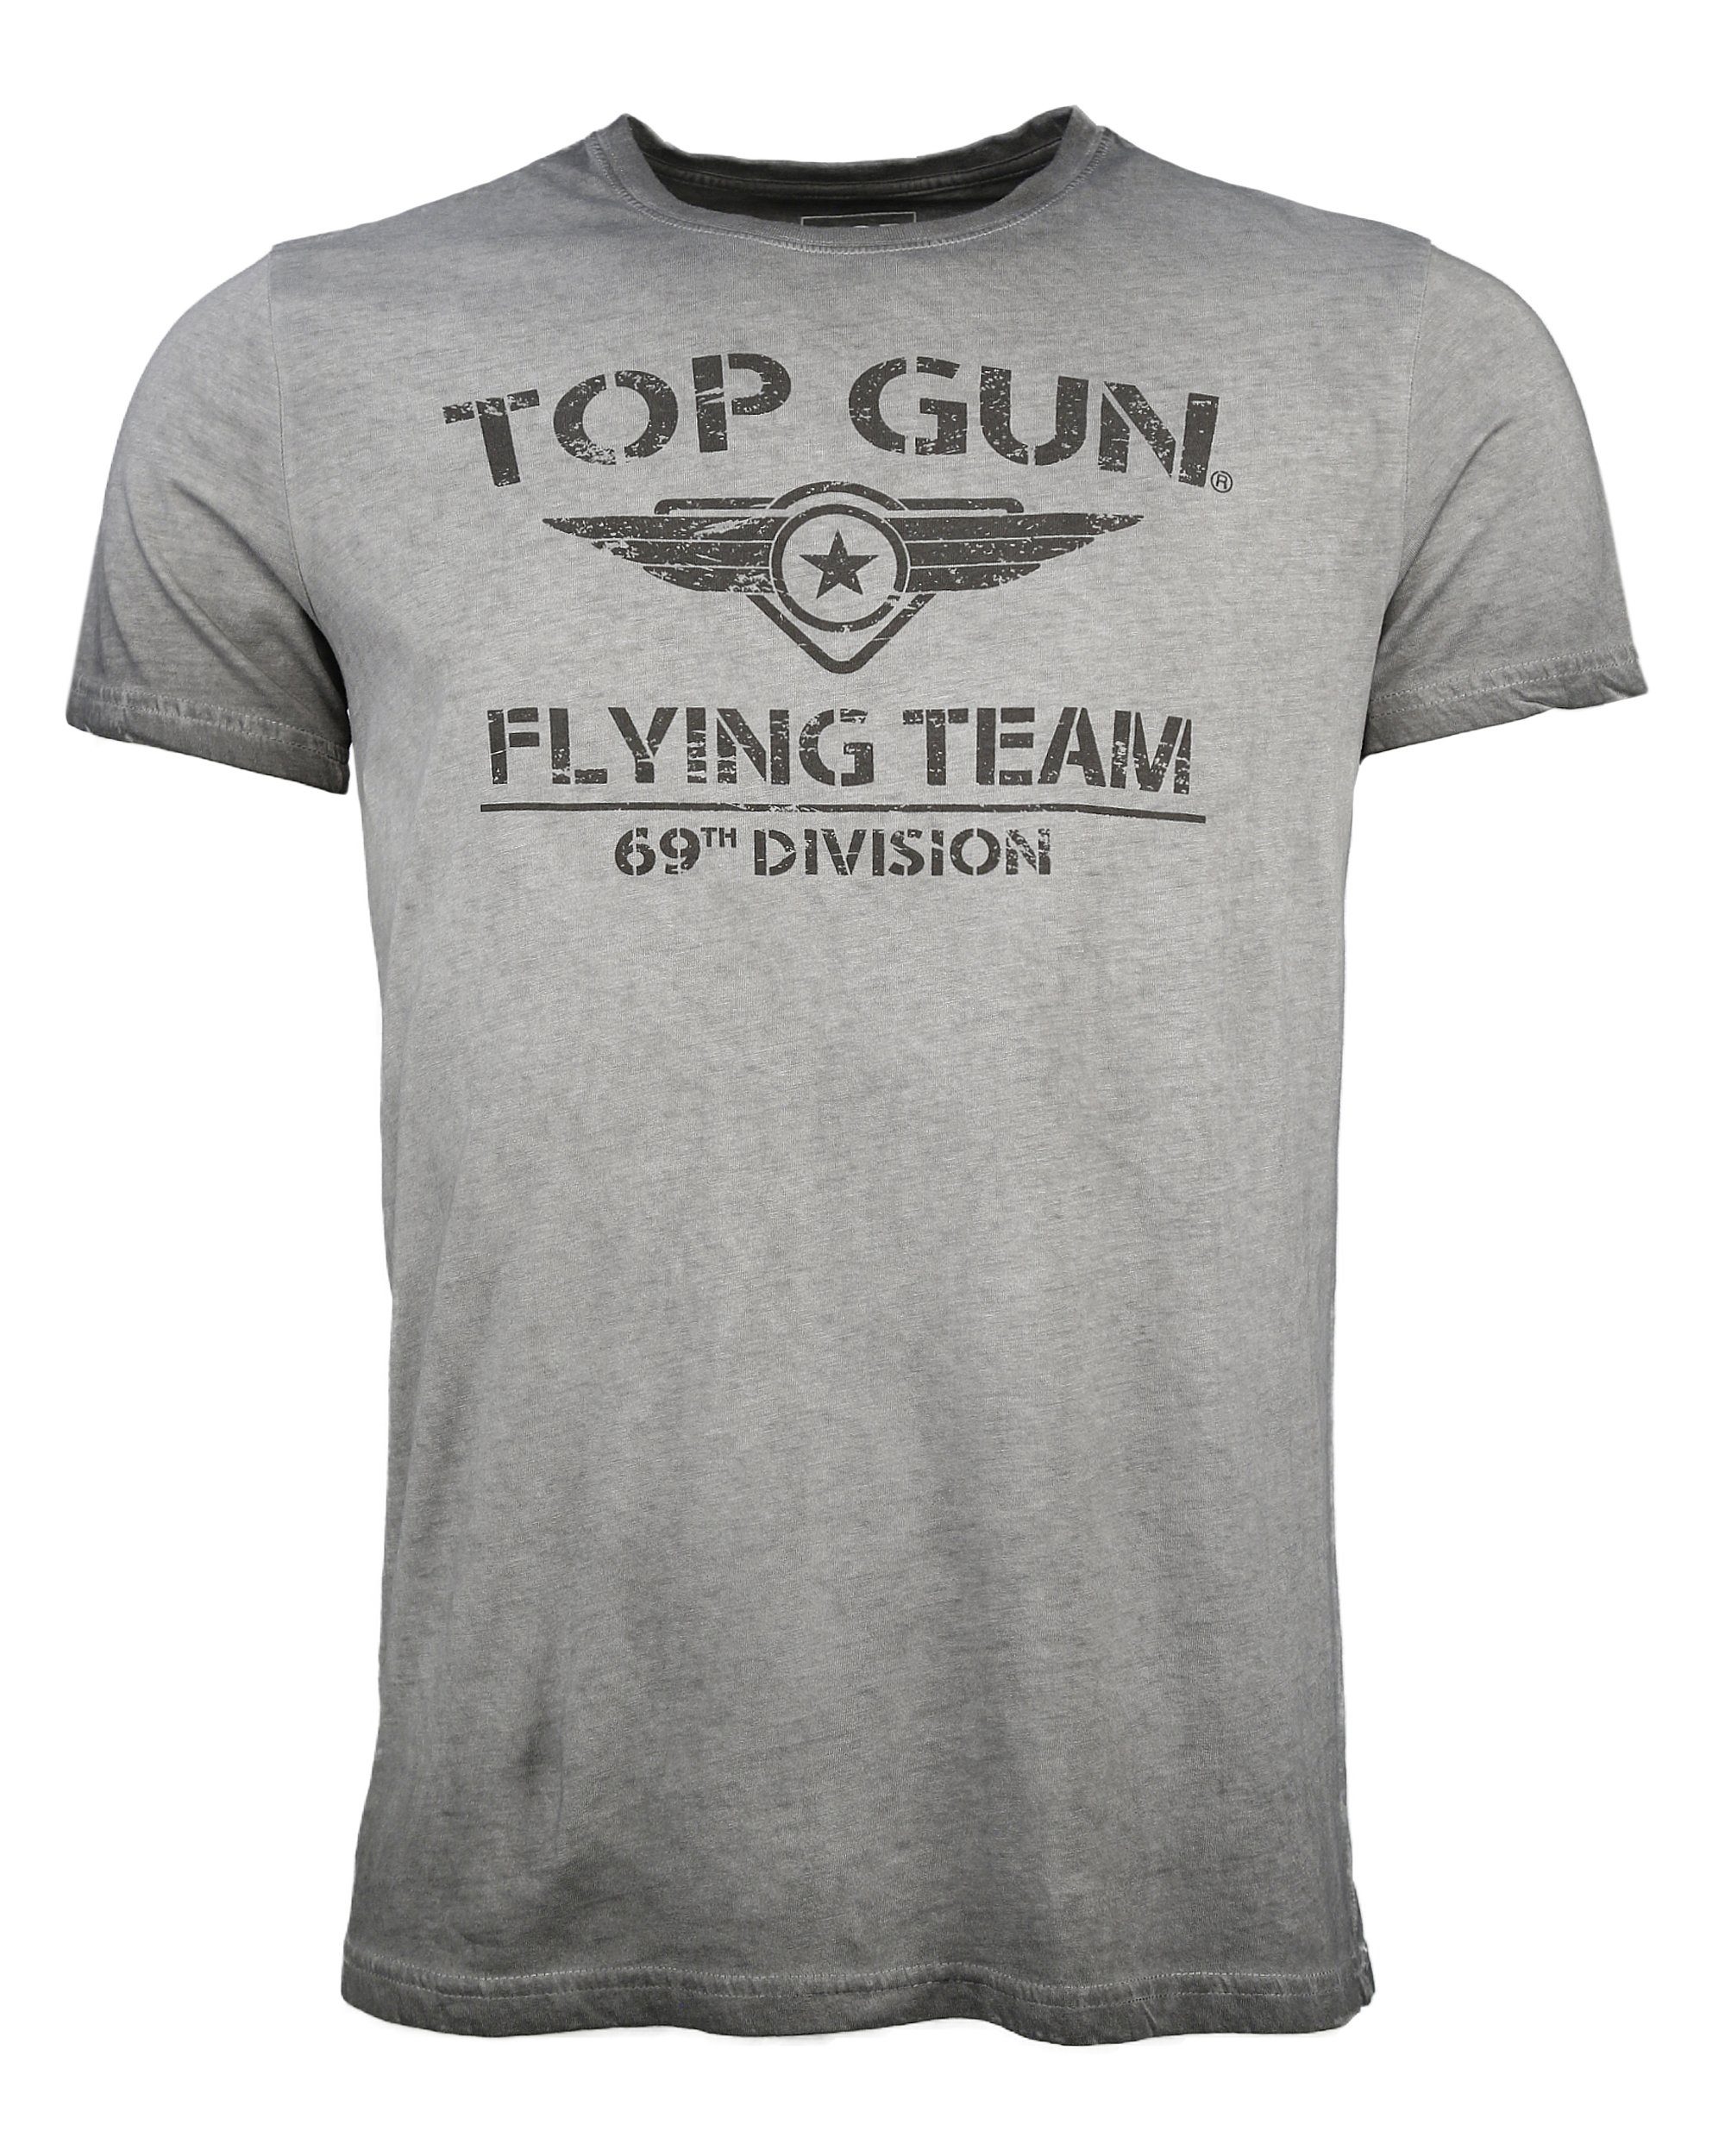 T-Shirt grey GUN TOP TG20191041 Ease